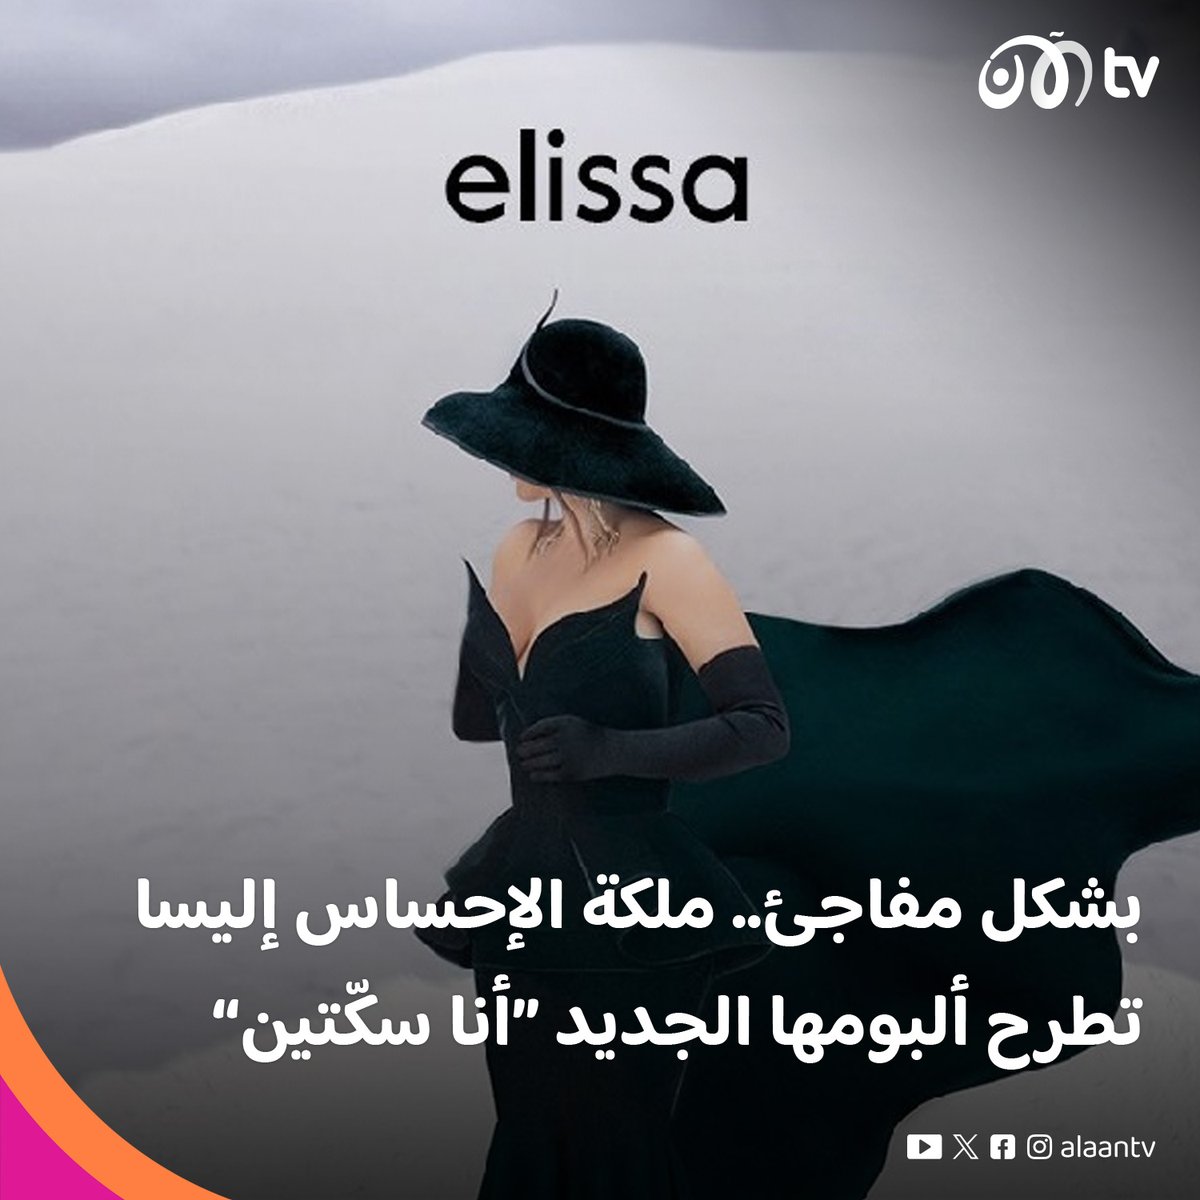 #الآن_فن طرحت ملكة الإحساس #إليسا @elissakh ألبومها الجديد #أنا_سكّتين بشكل مفاجئ عبر المنصات الرقمية، ويتضمن الألبوم 12 أغنية تم طرحهم بالكامل وبالابتعاد عن الطرح التدريجي للألبوم #تلفزيون_الآن #فن #مشاهير #نجوم #اليسا_انا_سكتين